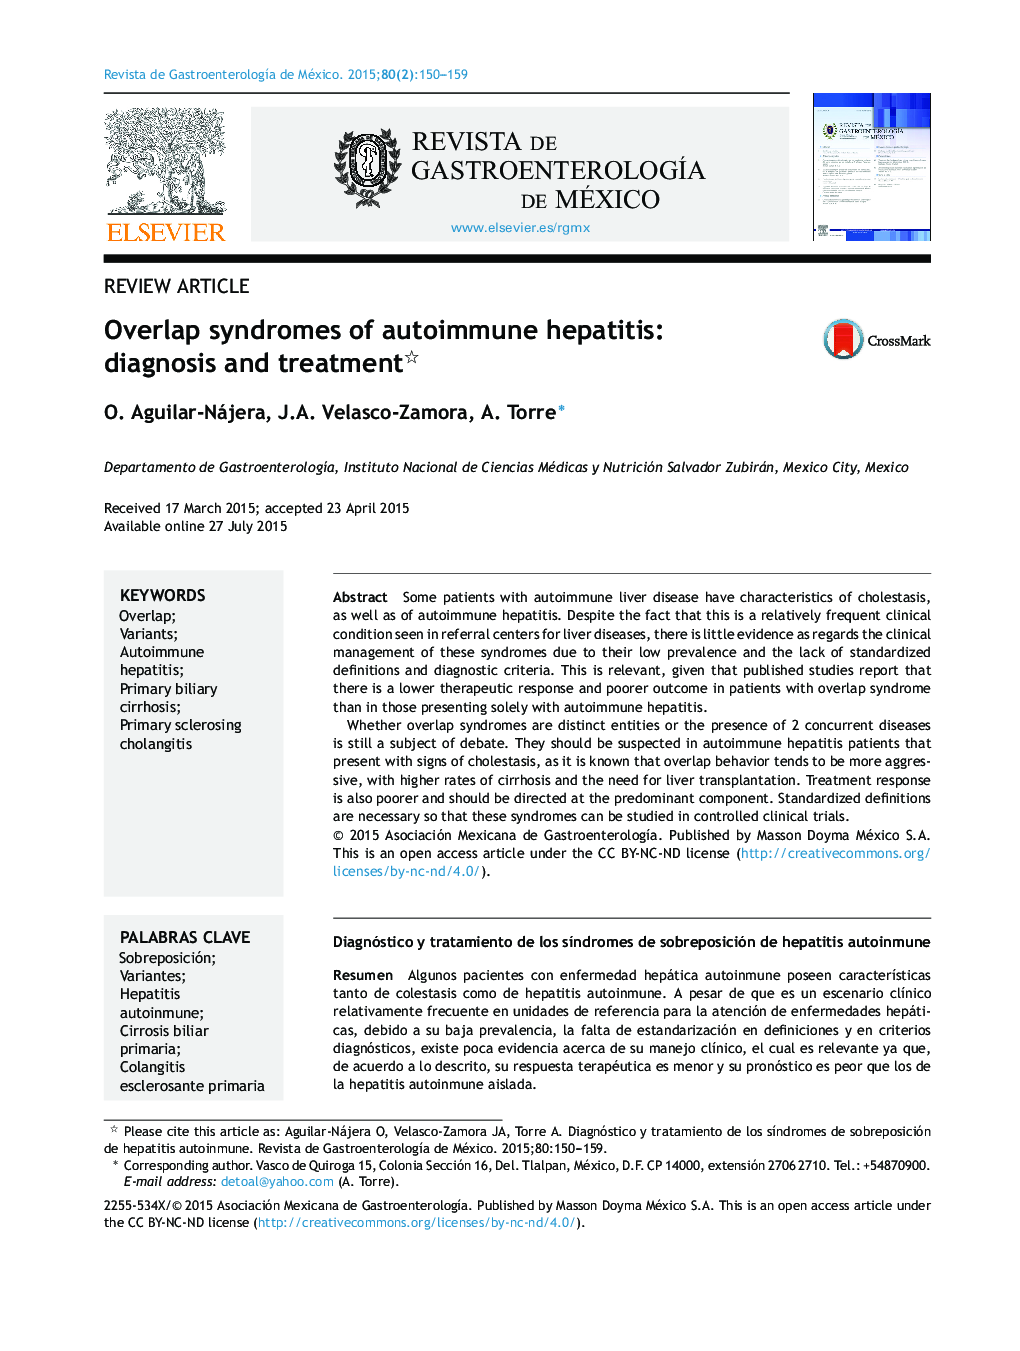 سندرم های همپوشانی هپاتیت اتوایمیون: تشخیص و درمان 